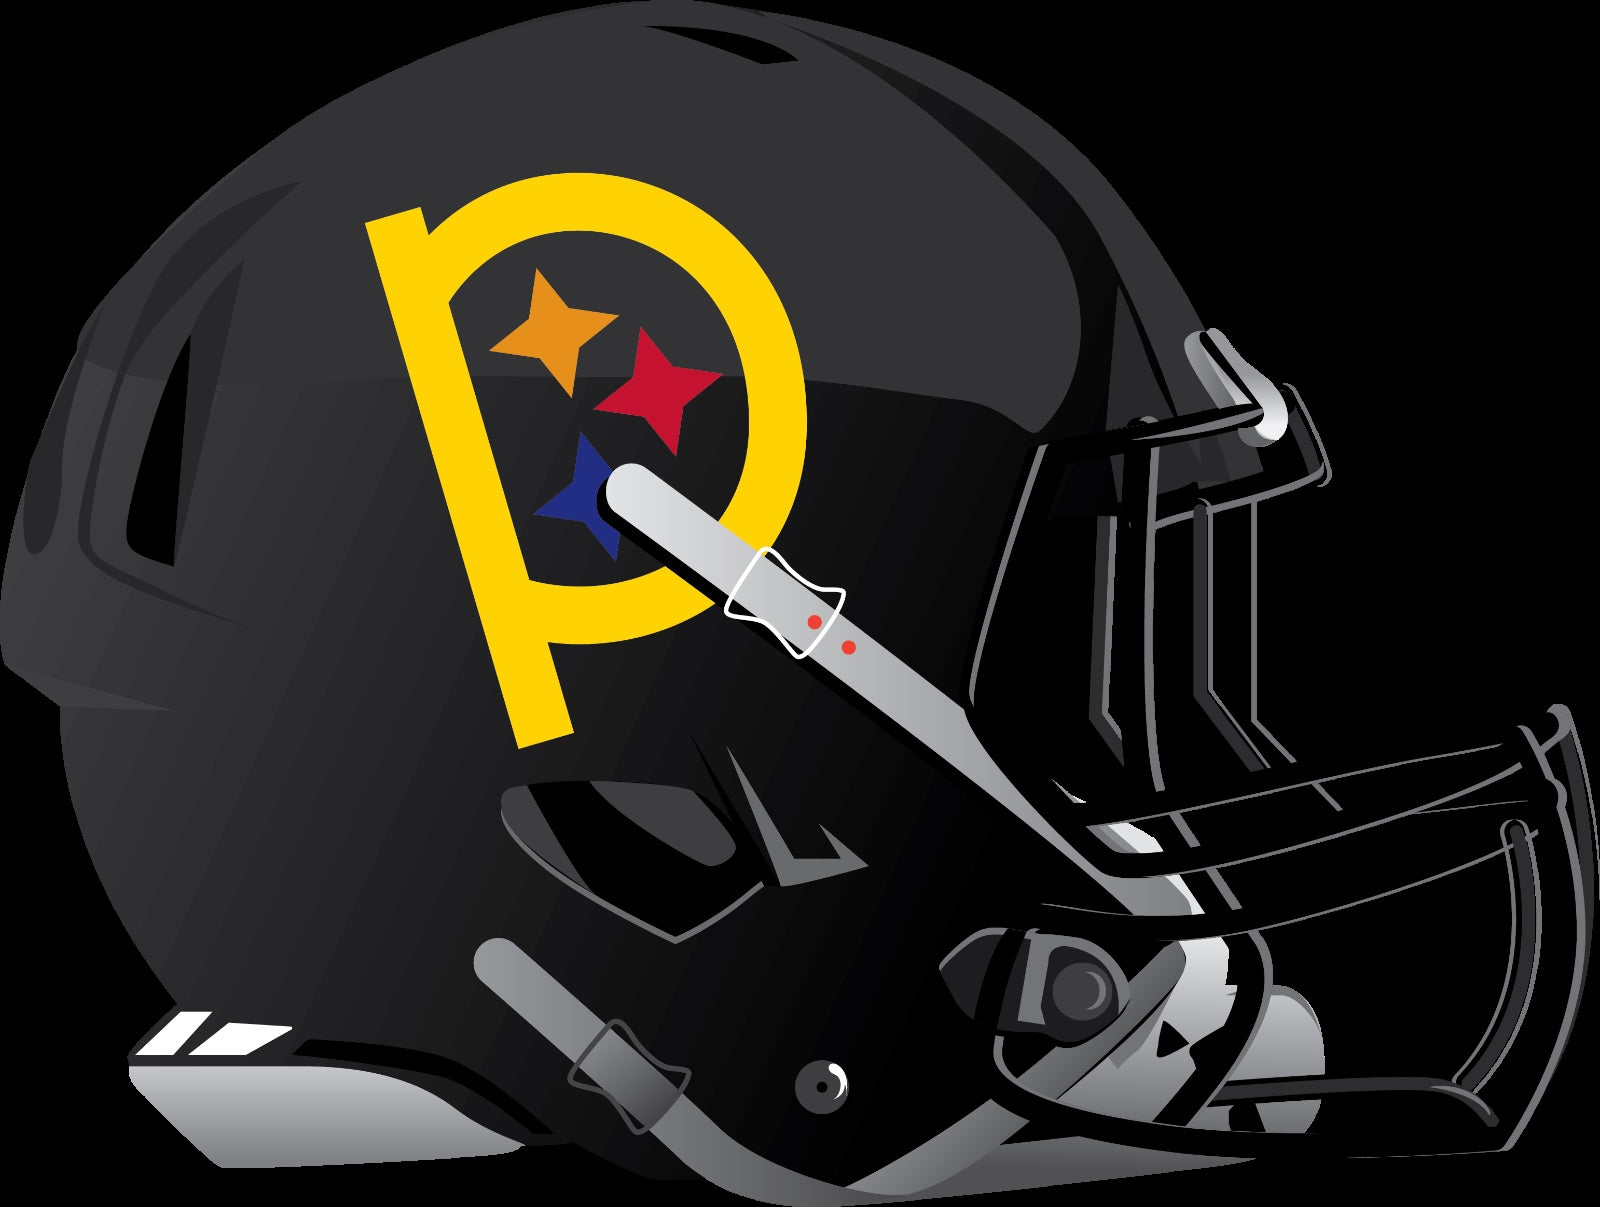 Steelers  Cool football helmets, Football helmets, Football helmet design